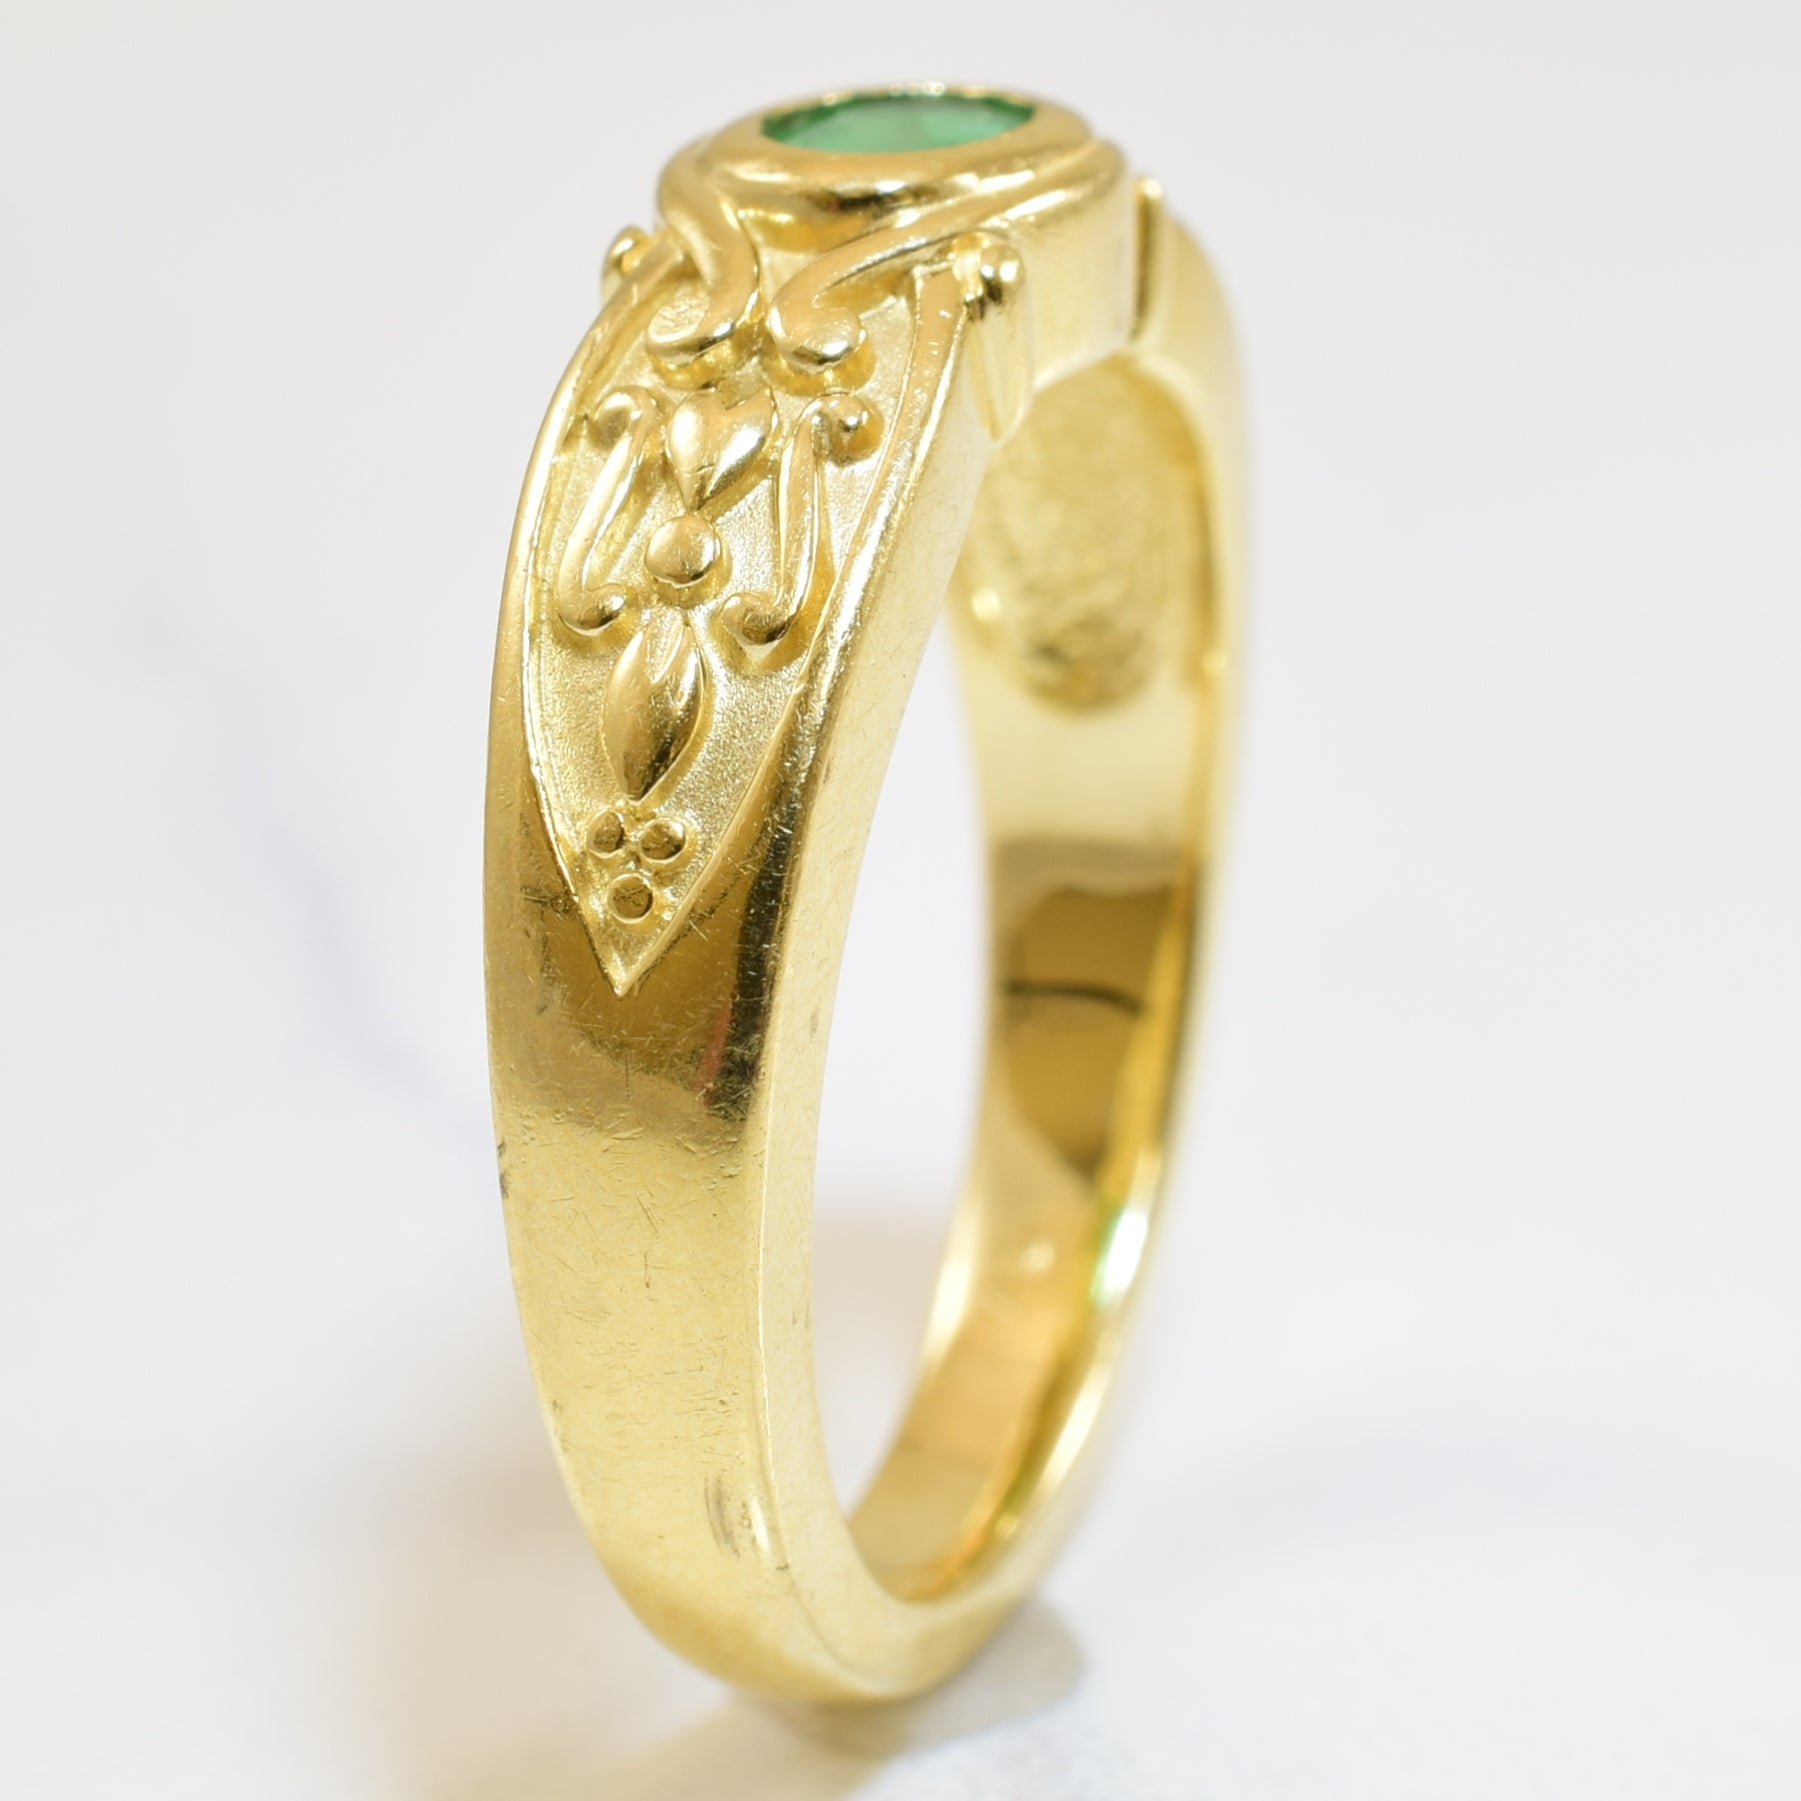 Bezel Set Emerald Ring | 0.36ct | SZ 7 |